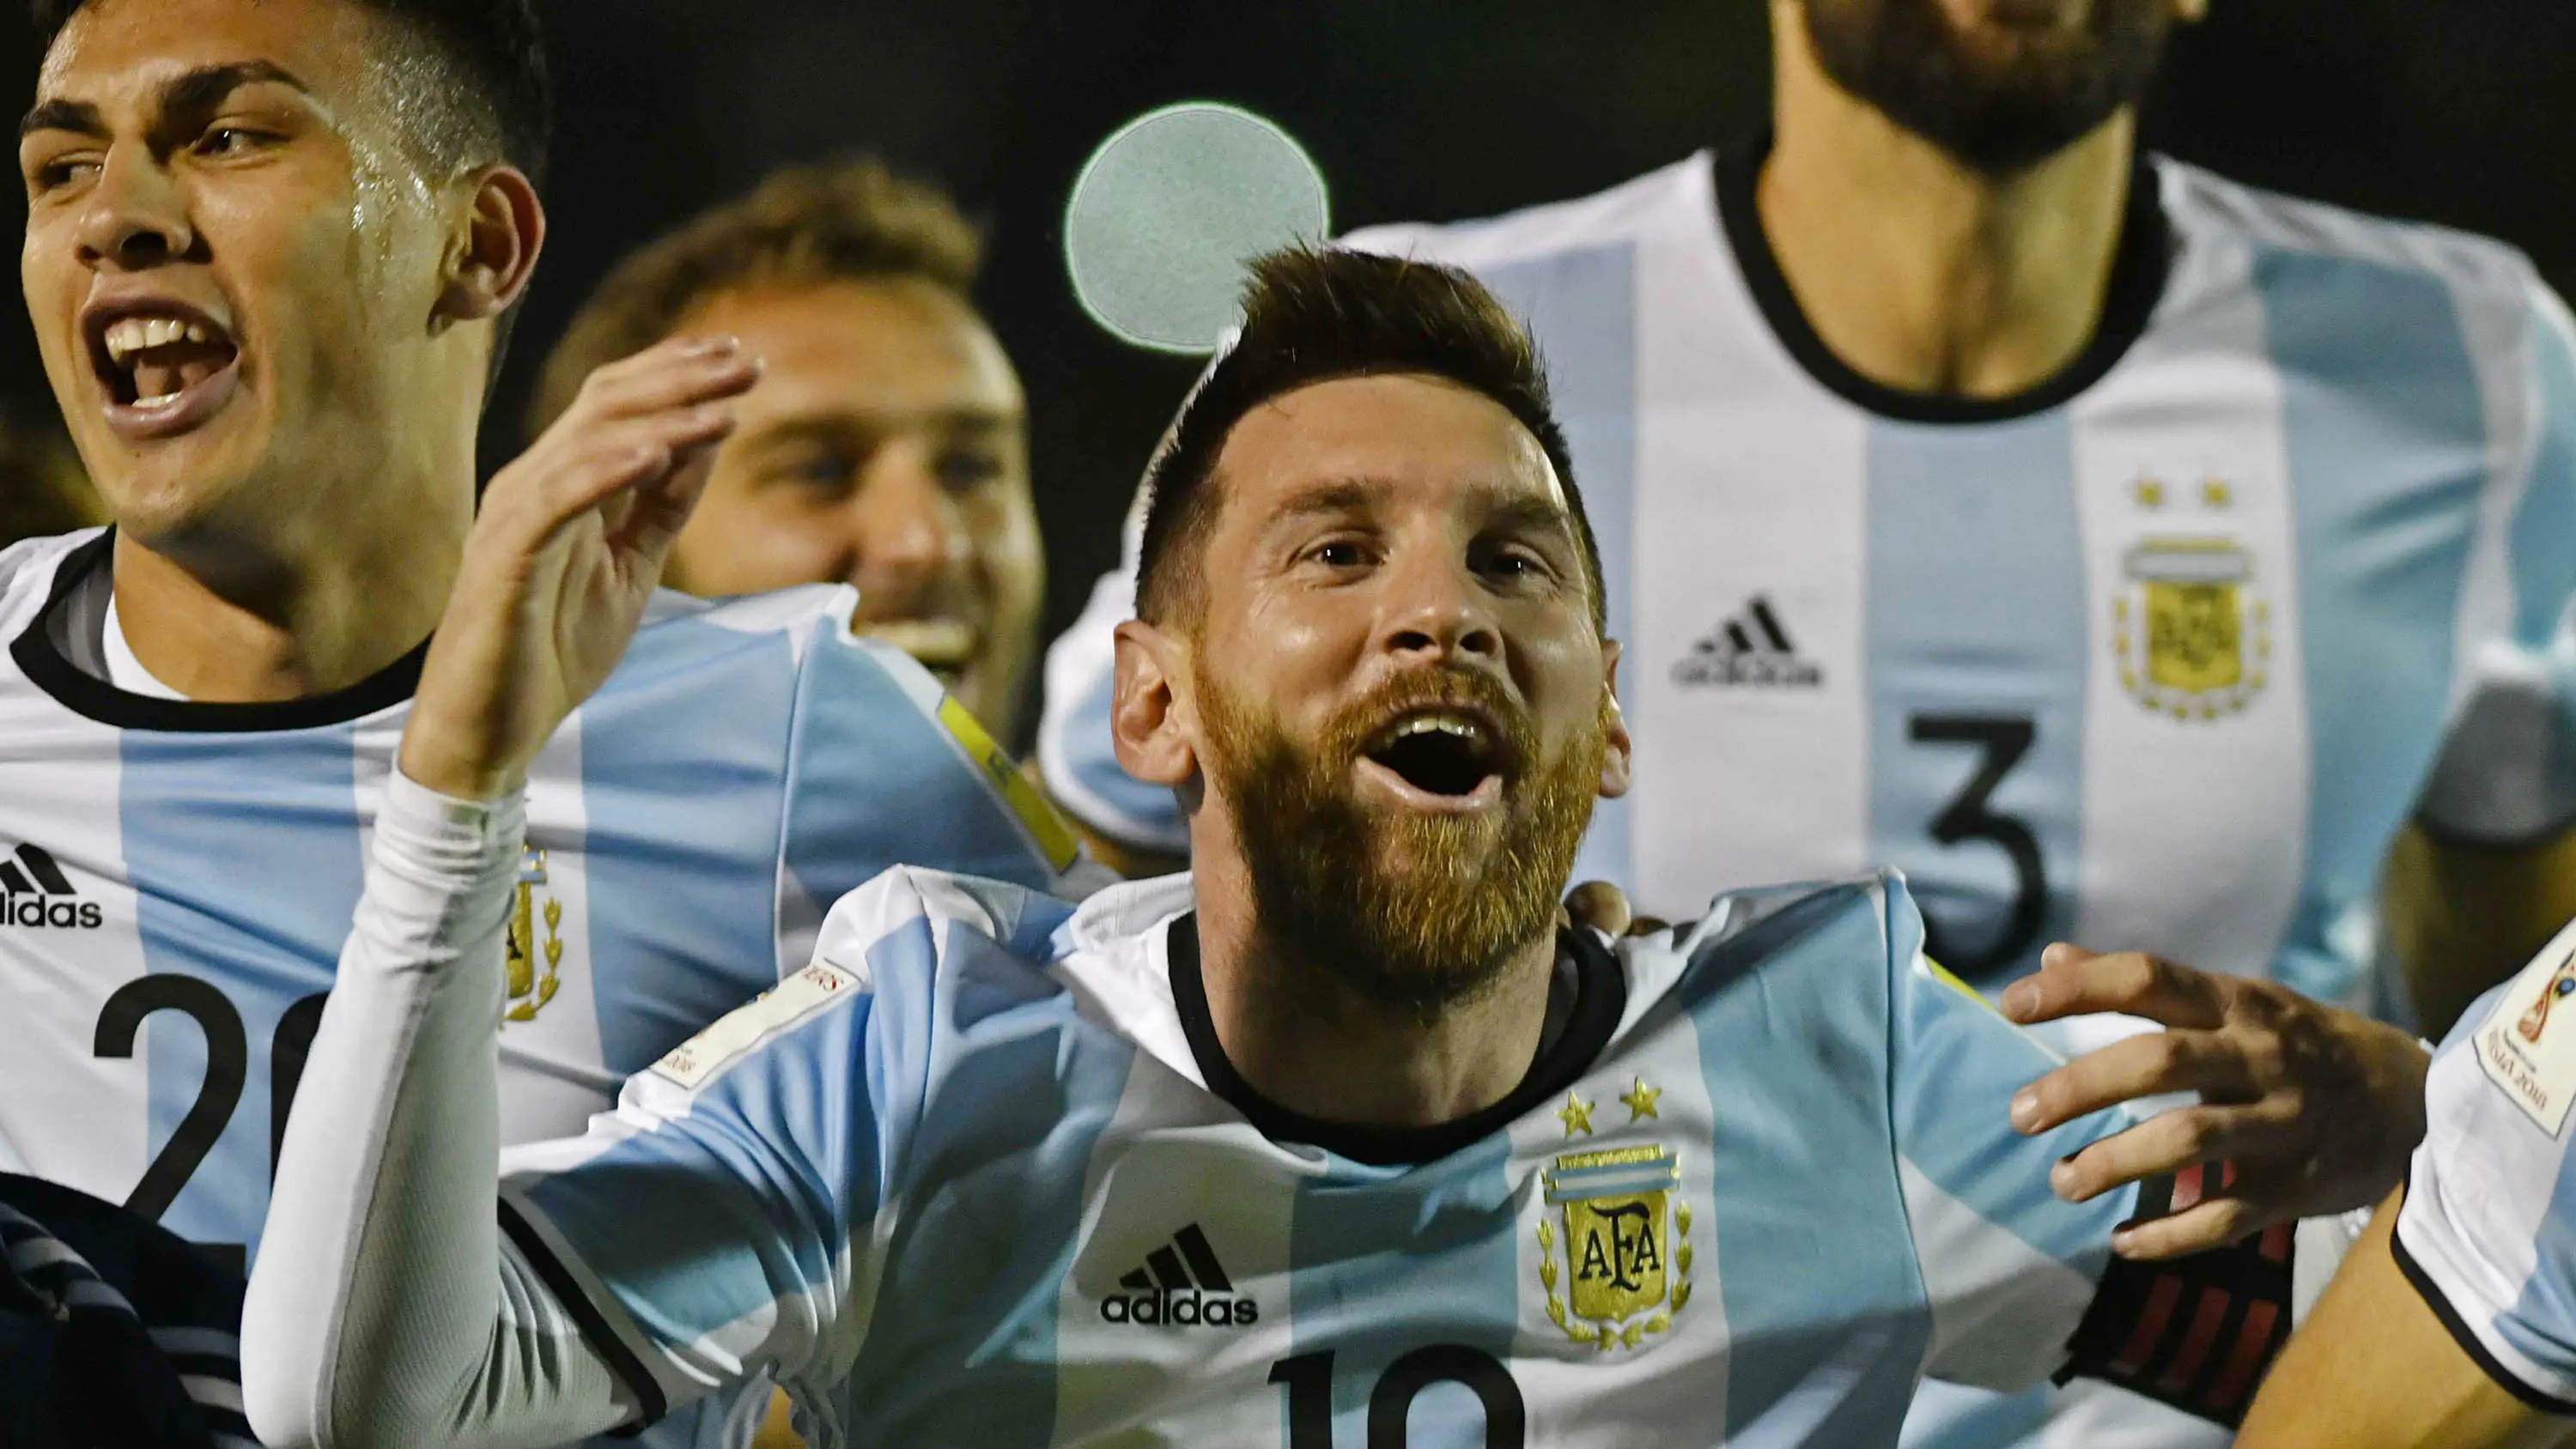 Bintang Argentina, Lionel Messi, merayakan keberhasilan lolos ke Piala Dunia 2018 usai mengalahkan Ekuador di Stadion Olimpico Atahualpa, Quito, Selasa (10/10/2017). Sempat tertinggal, Argentina akhirnya menang 3-1 atas Ekuador. (AFP/Juan Ruiz)